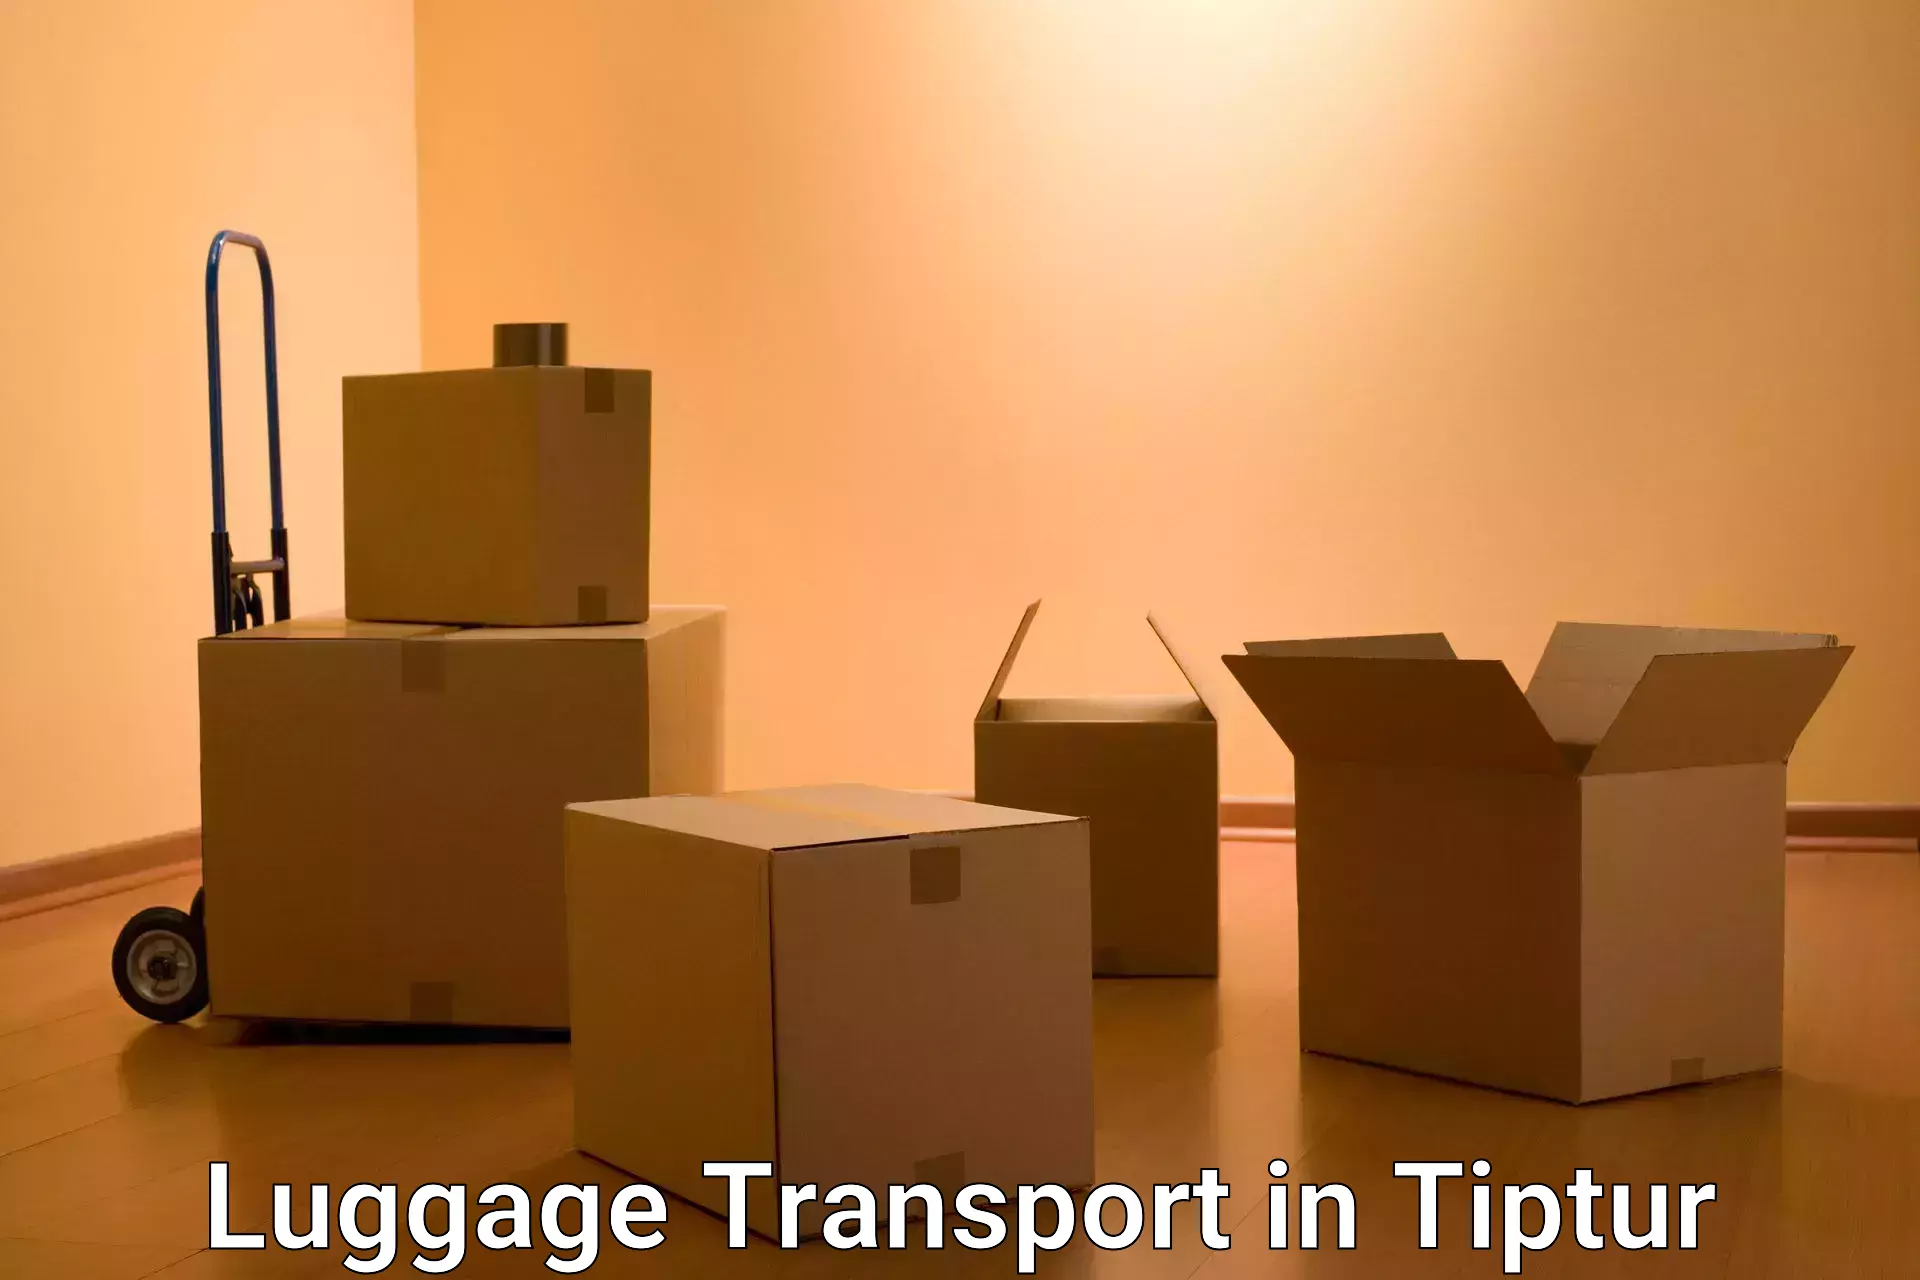 Urgent luggage shipment in Tiptur